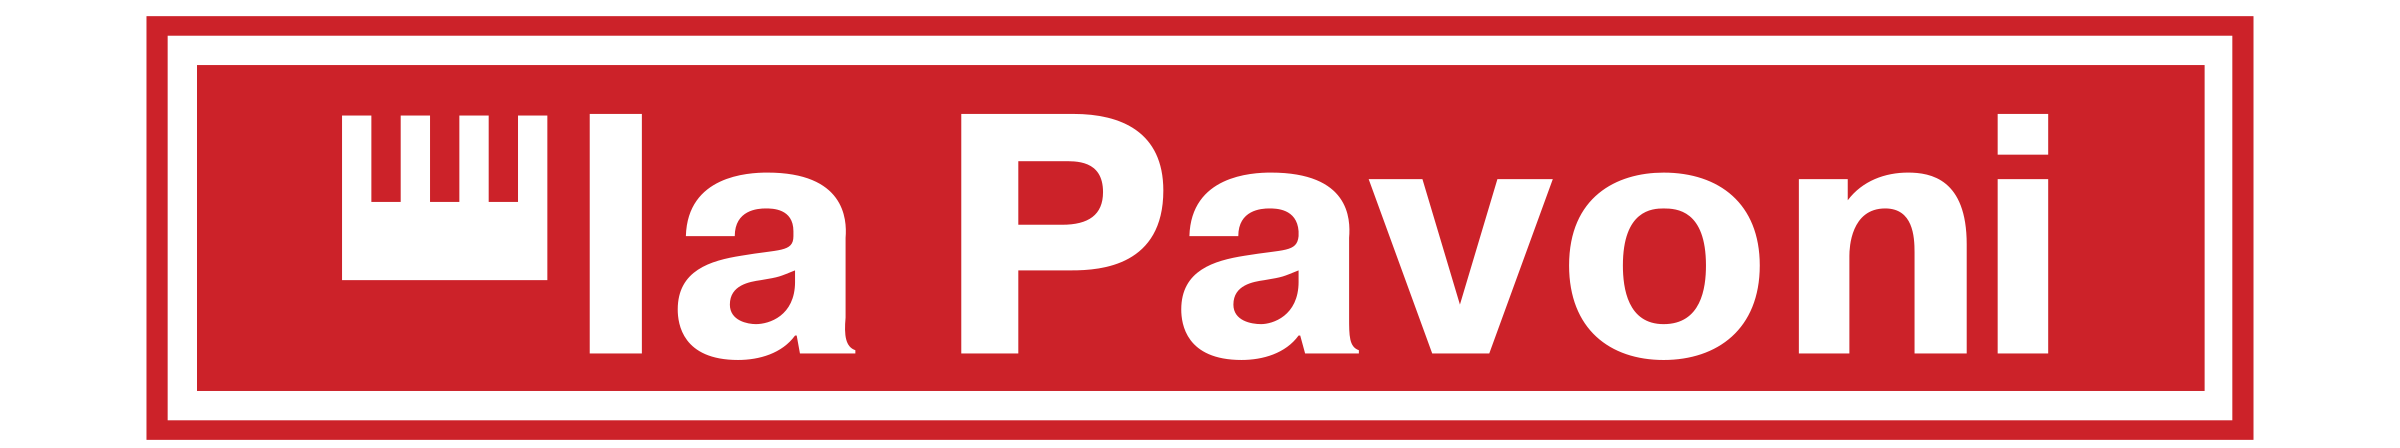 la-pavoni-logo-png-transparent